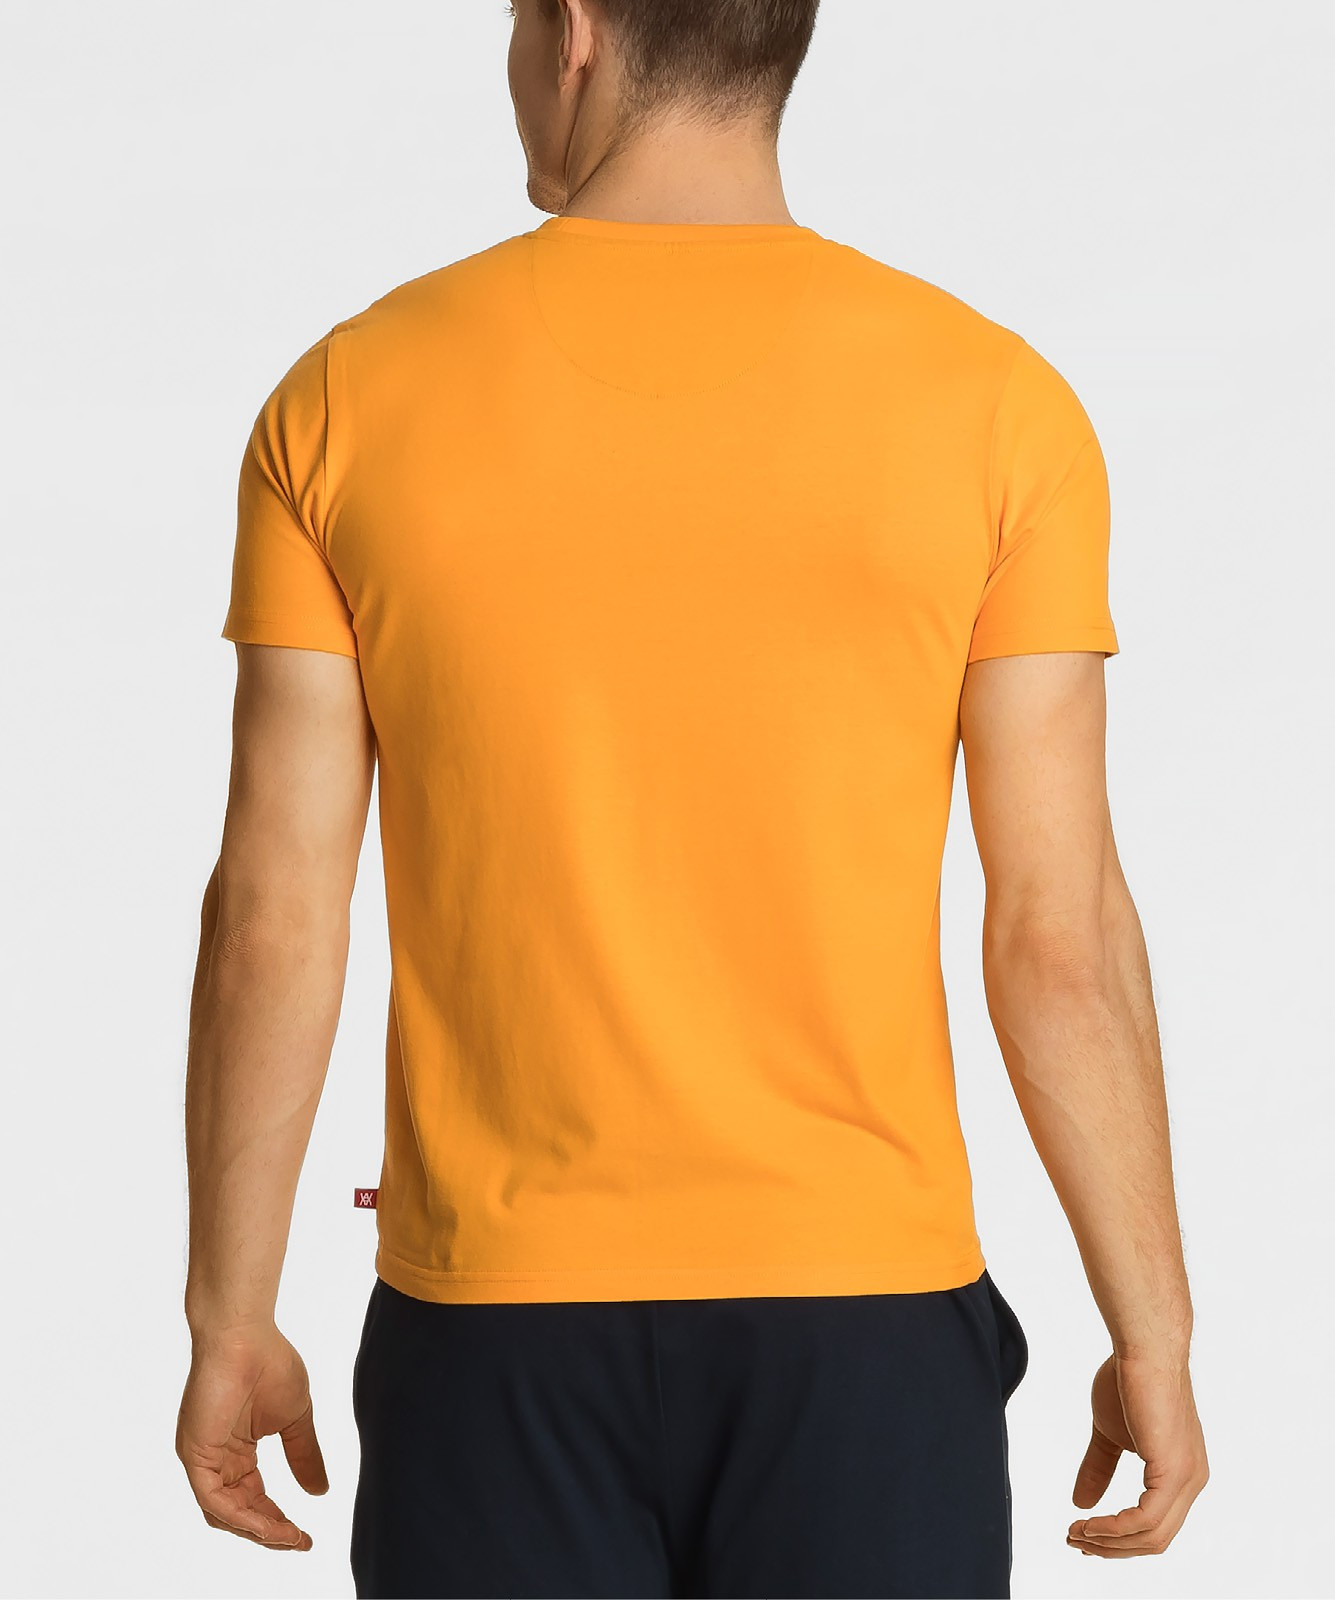 Pánské tričko Atlantic NMT-034 S-2XL jasně oranžová XXL